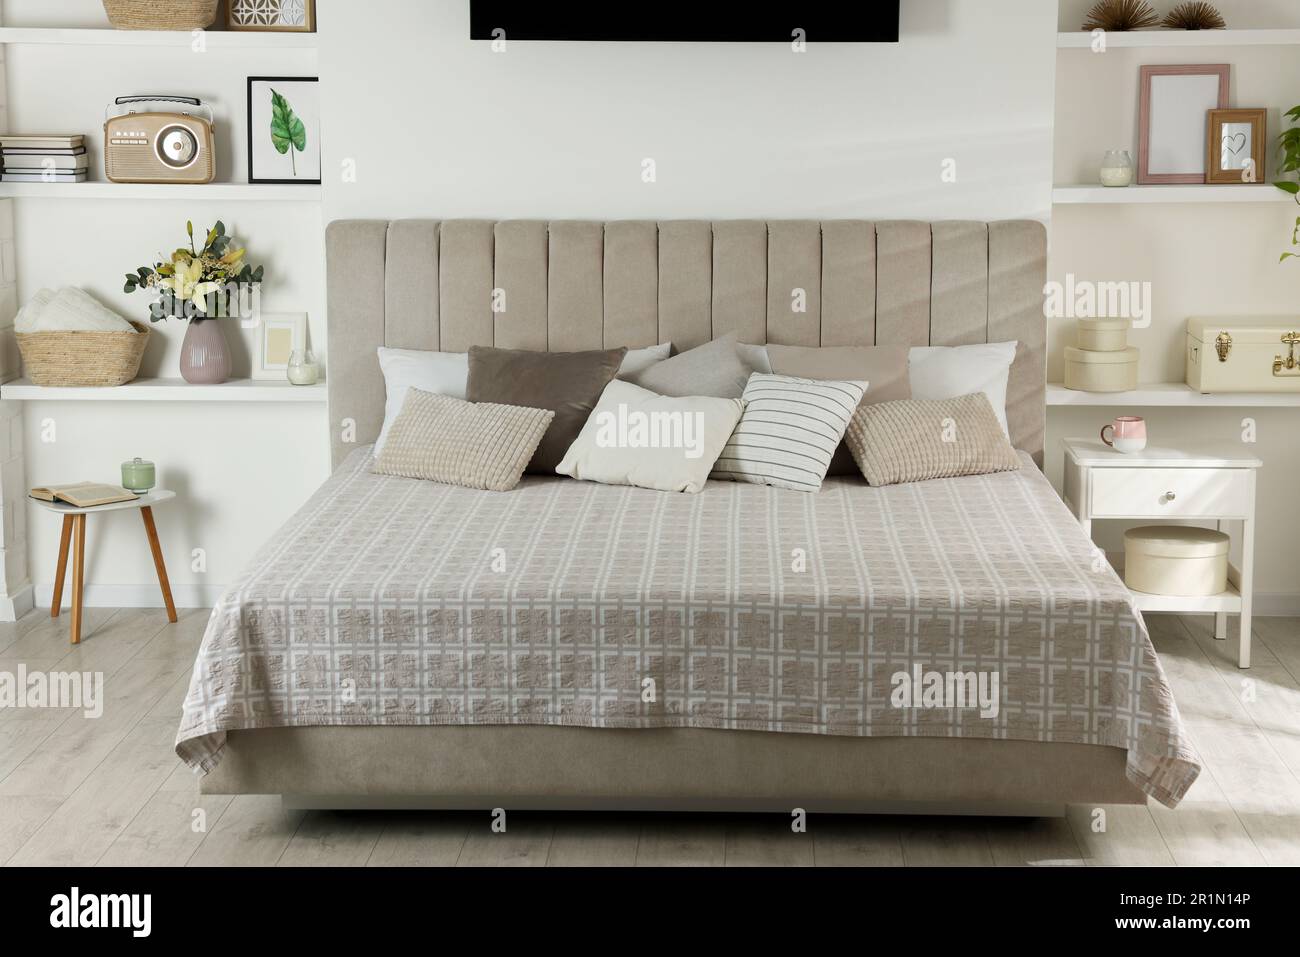 Stilvolle Schlafzimmereinrichtung mit Blumen und dekorativen Elementen auf Regalen Stockfoto